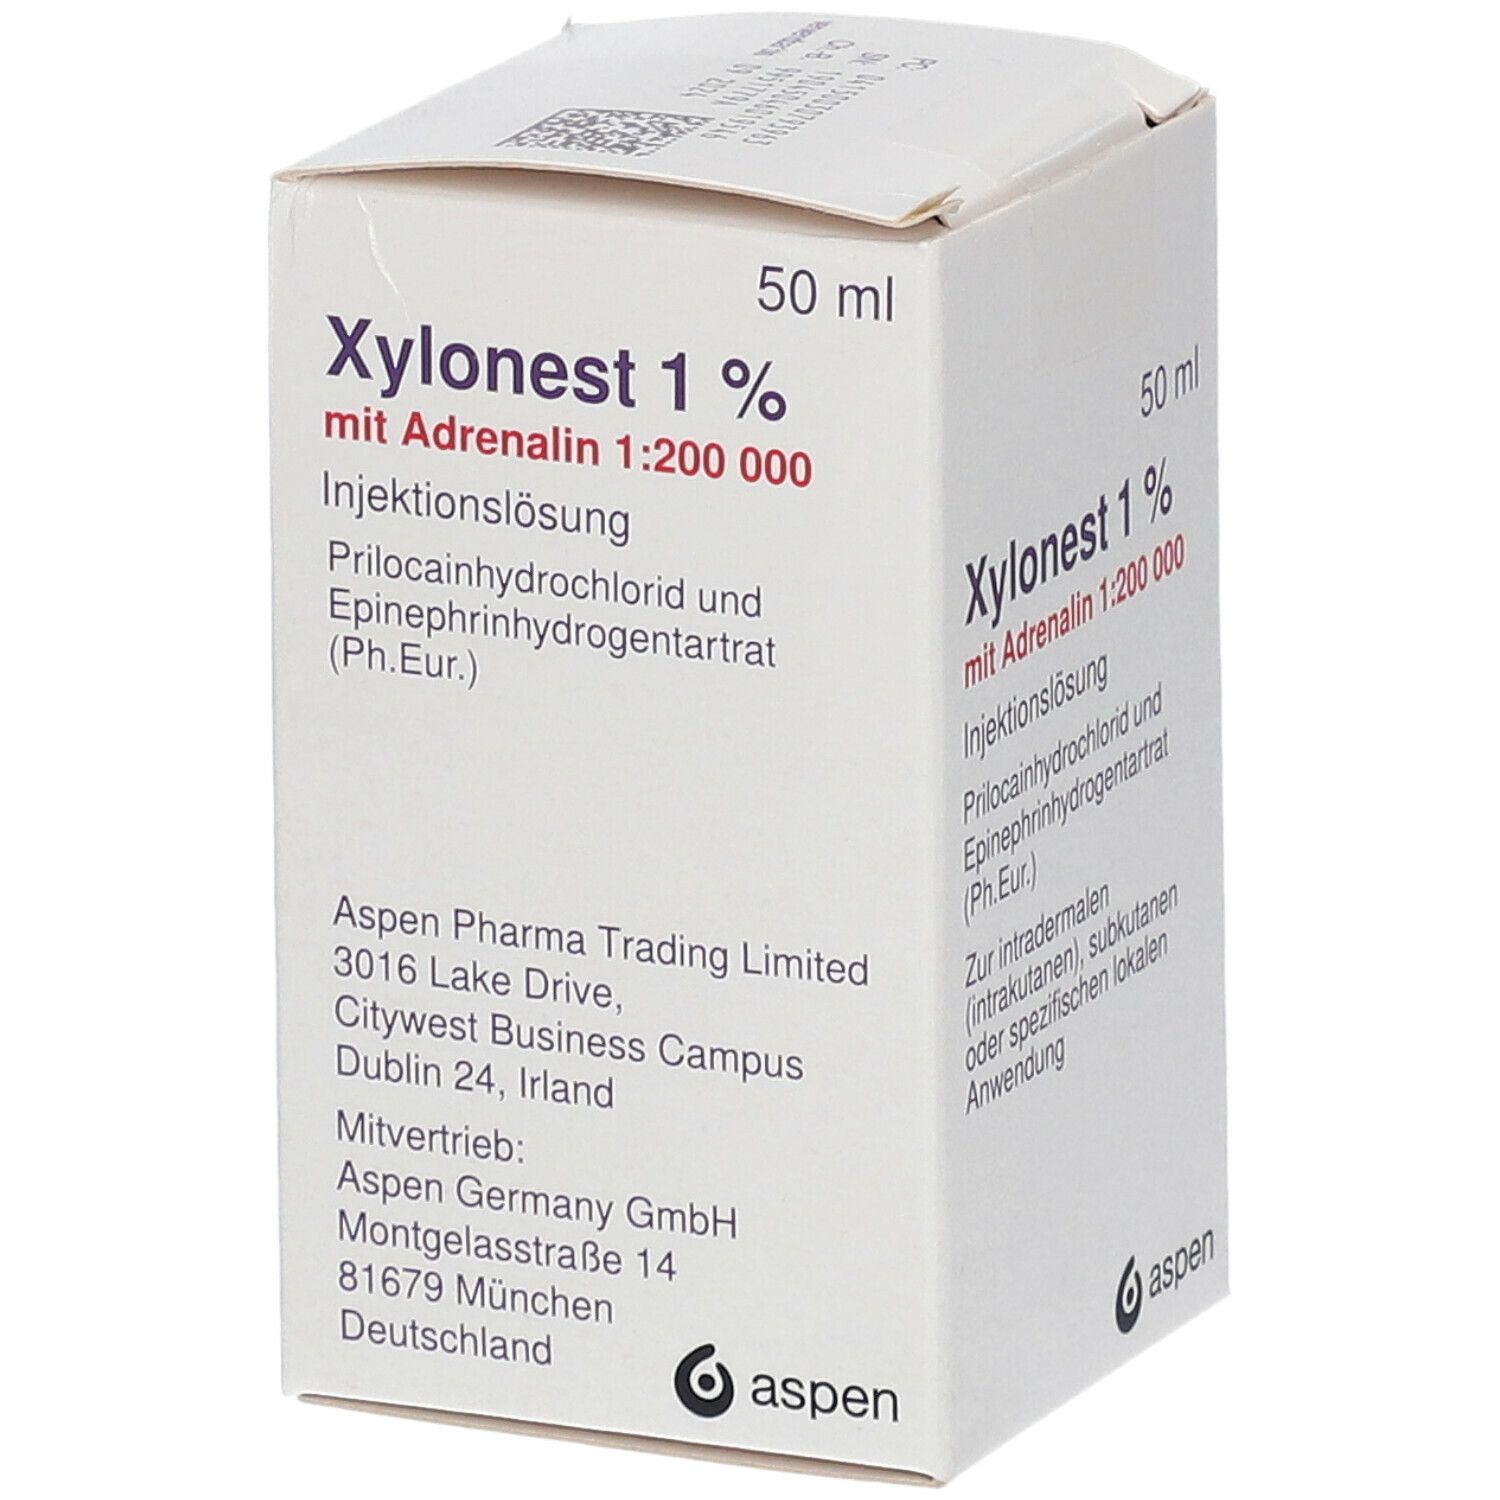 Xylonest® 1 % mit Adrenalin 1:200 000